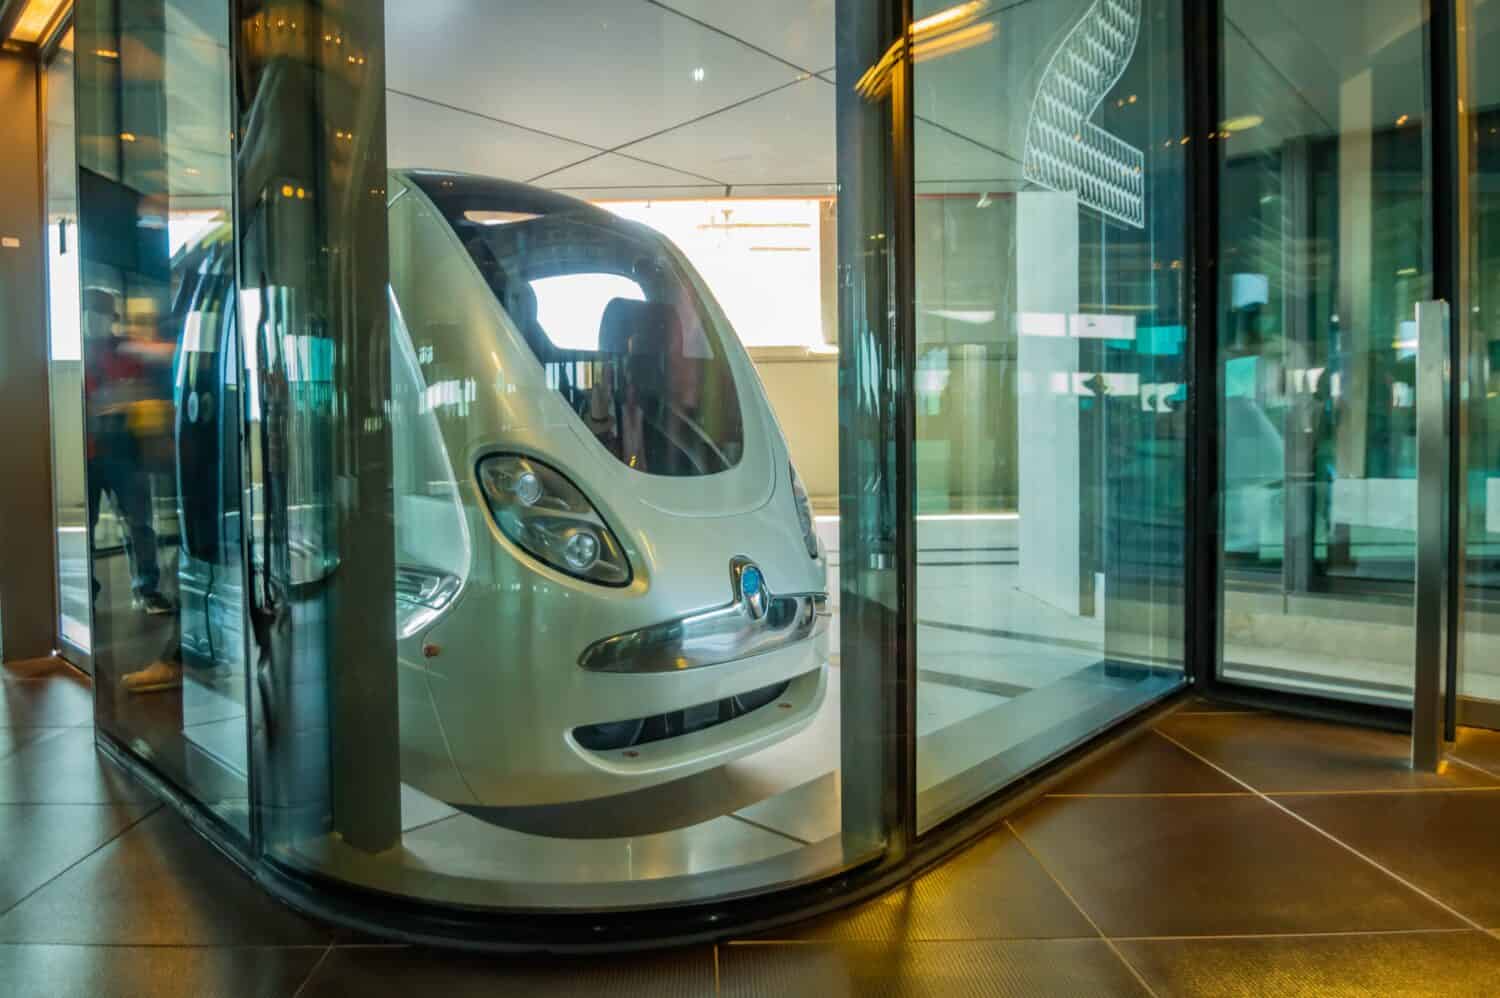 Personal transit in Masdar City, Abu Dhabi